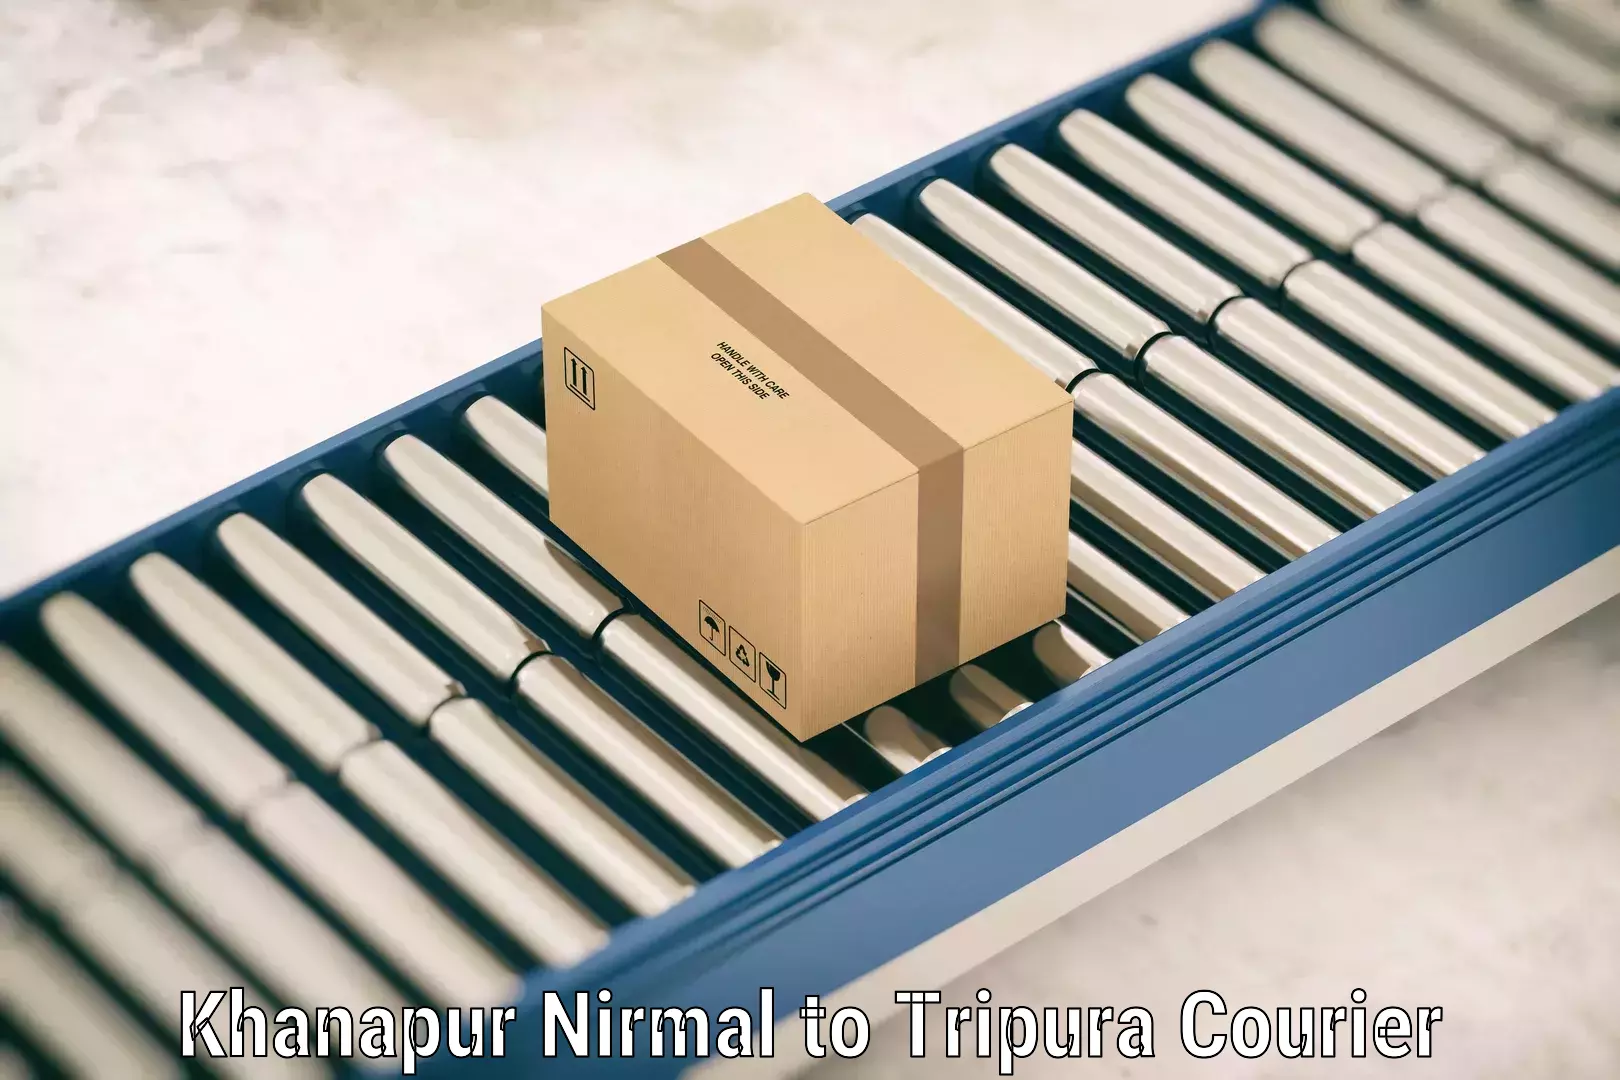 Baggage shipping service Khanapur Nirmal to Aambasa